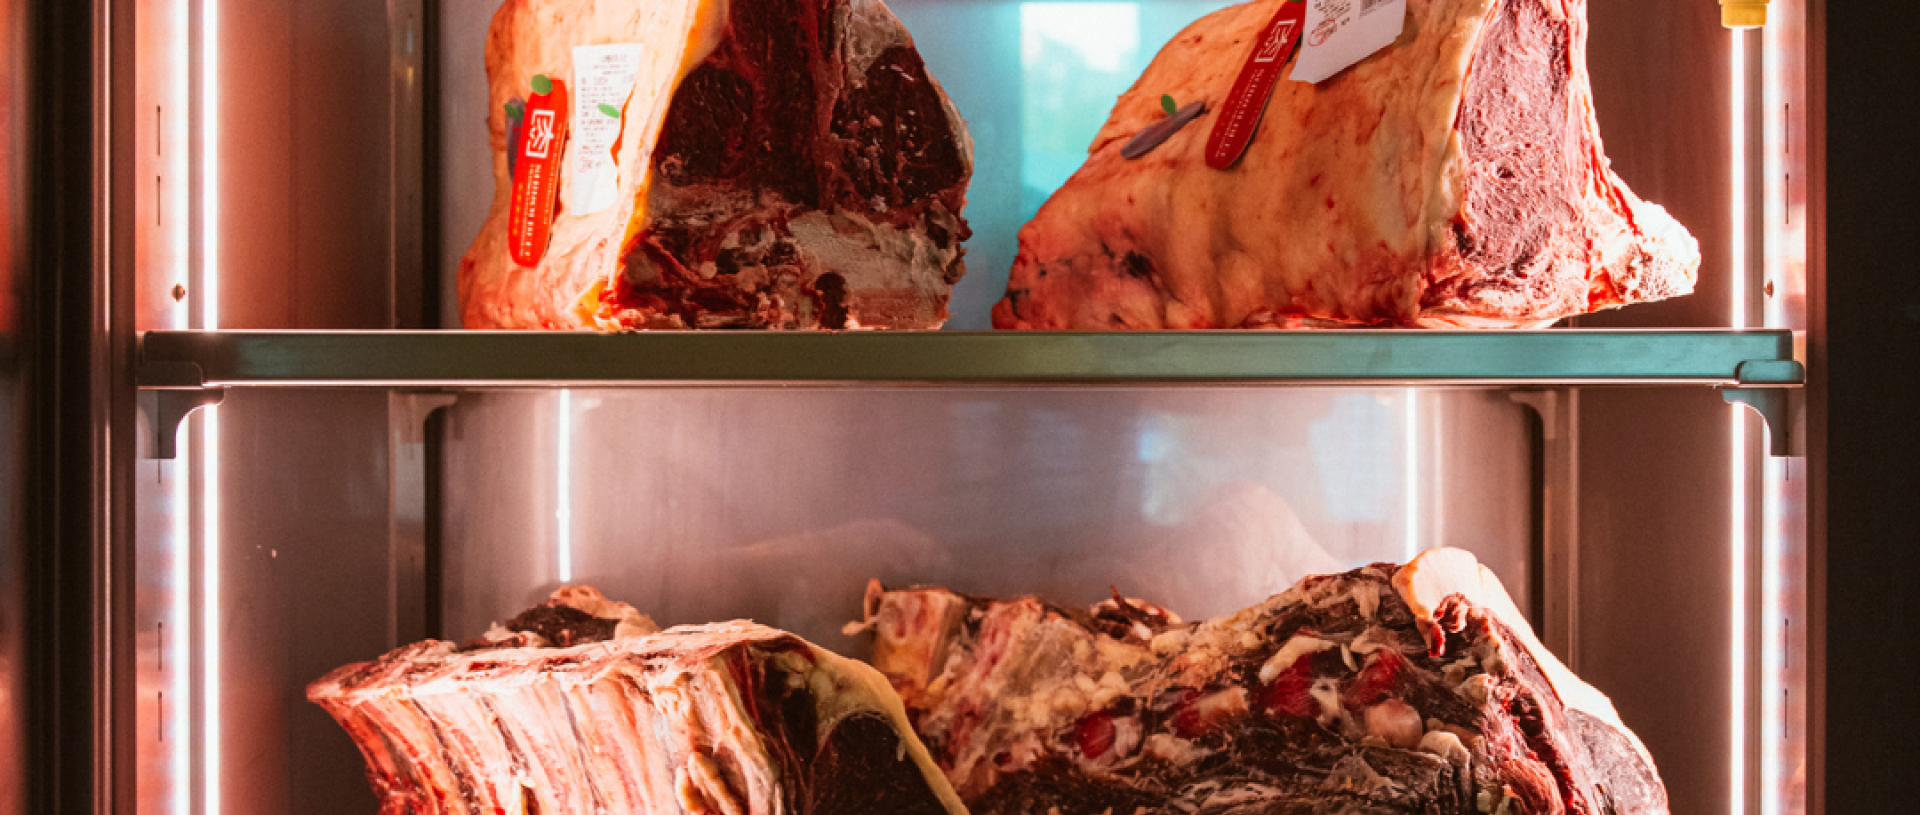 Carni stagionate in esposizione in una vetrina refrigerata di un ristorante.